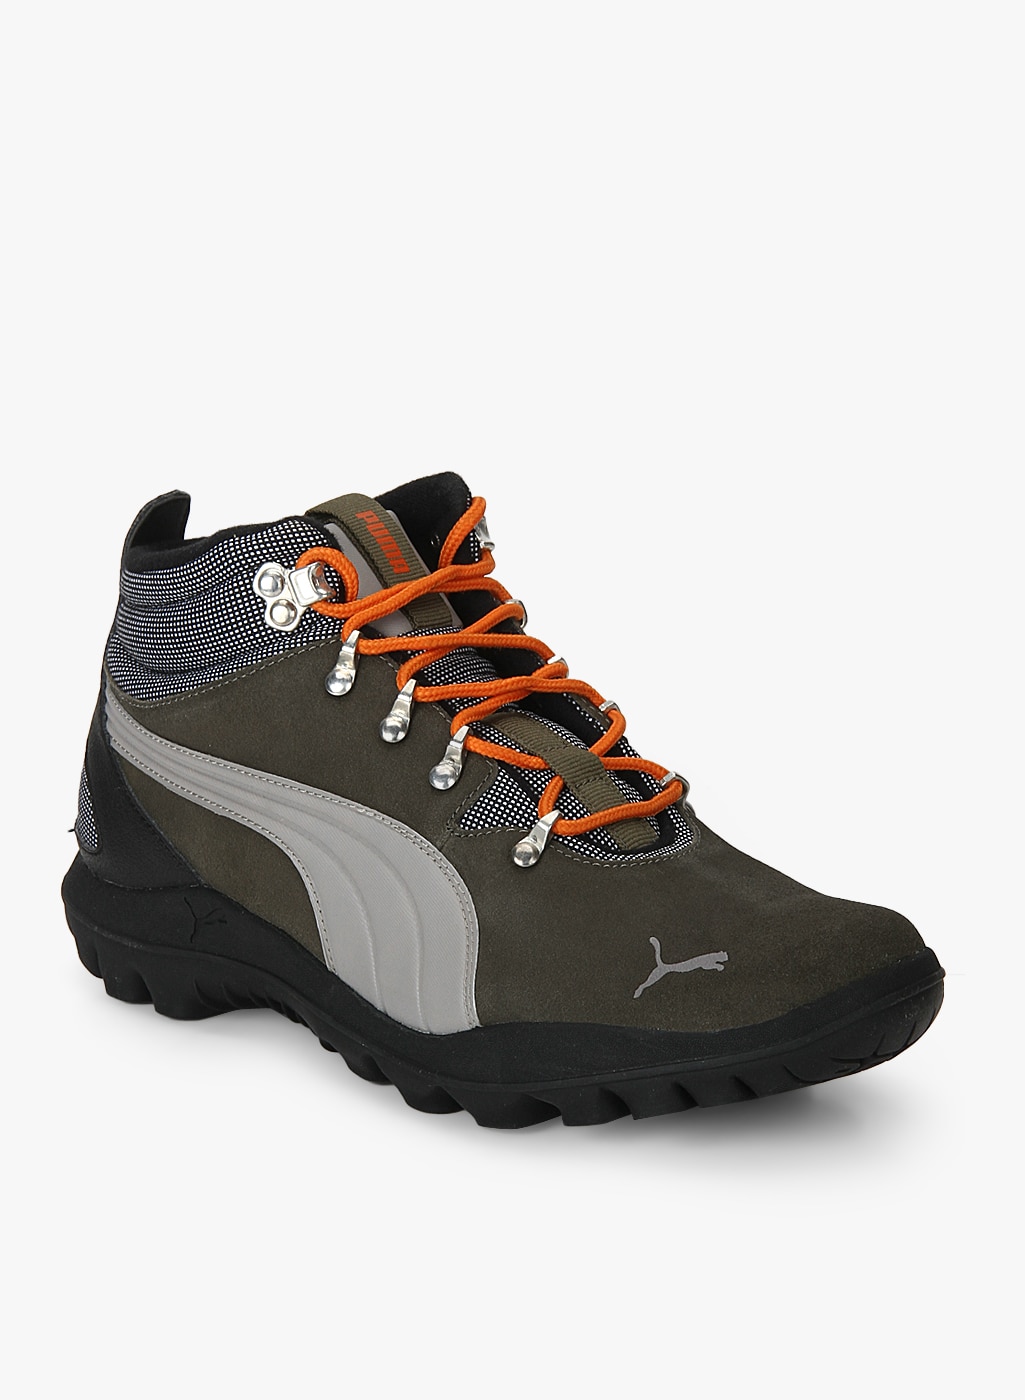 trekking shoes puma, OFF 77%,Best Deals 